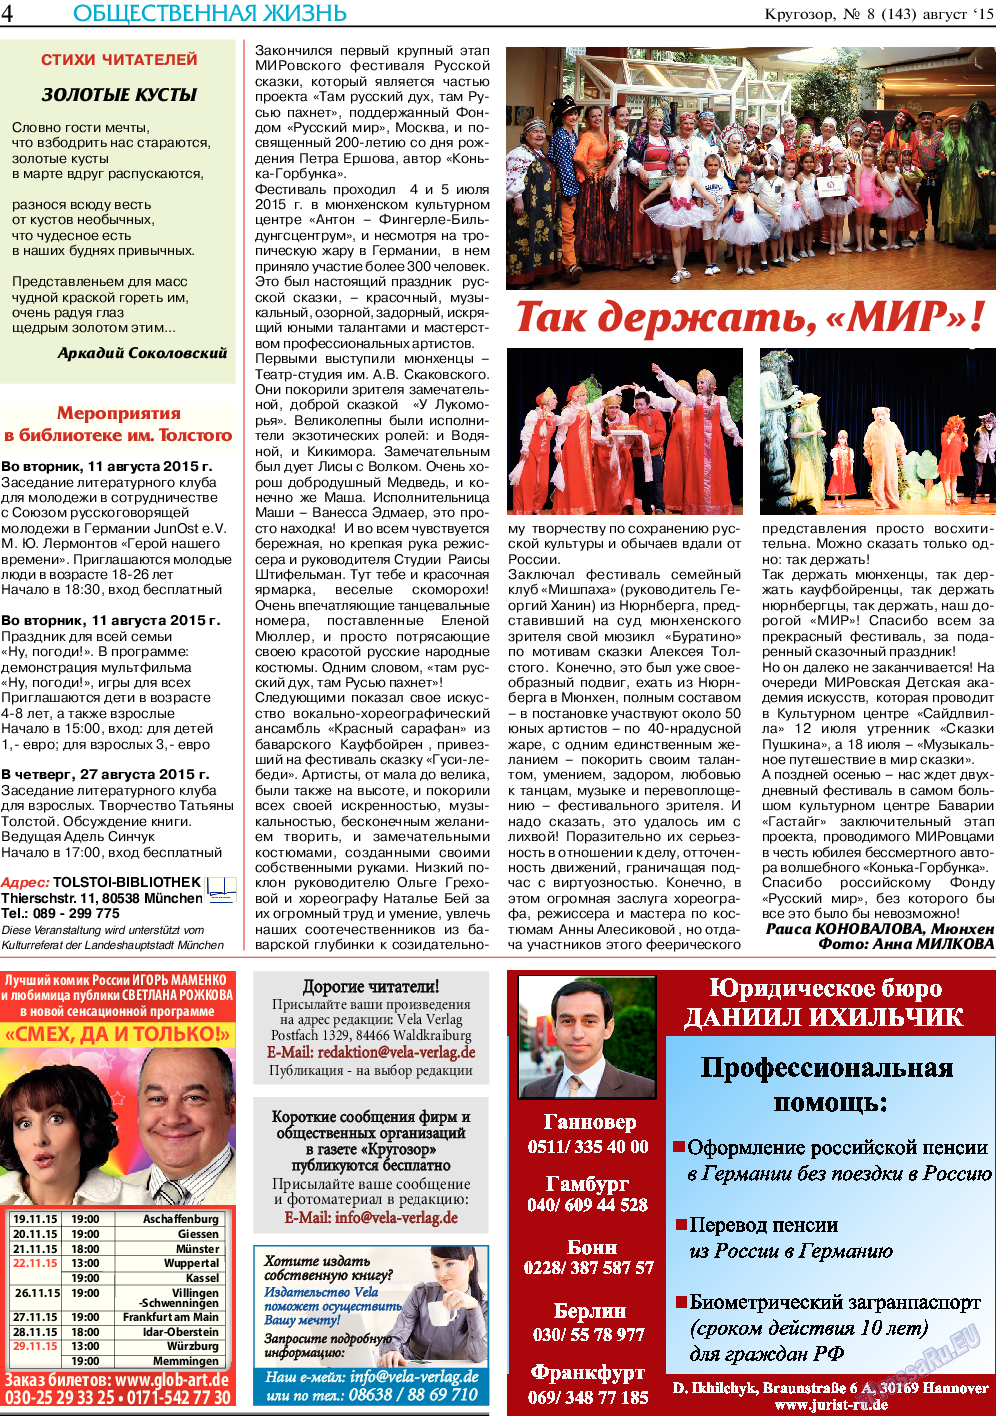 Кругозор, газета. 2015 №8 стр.4